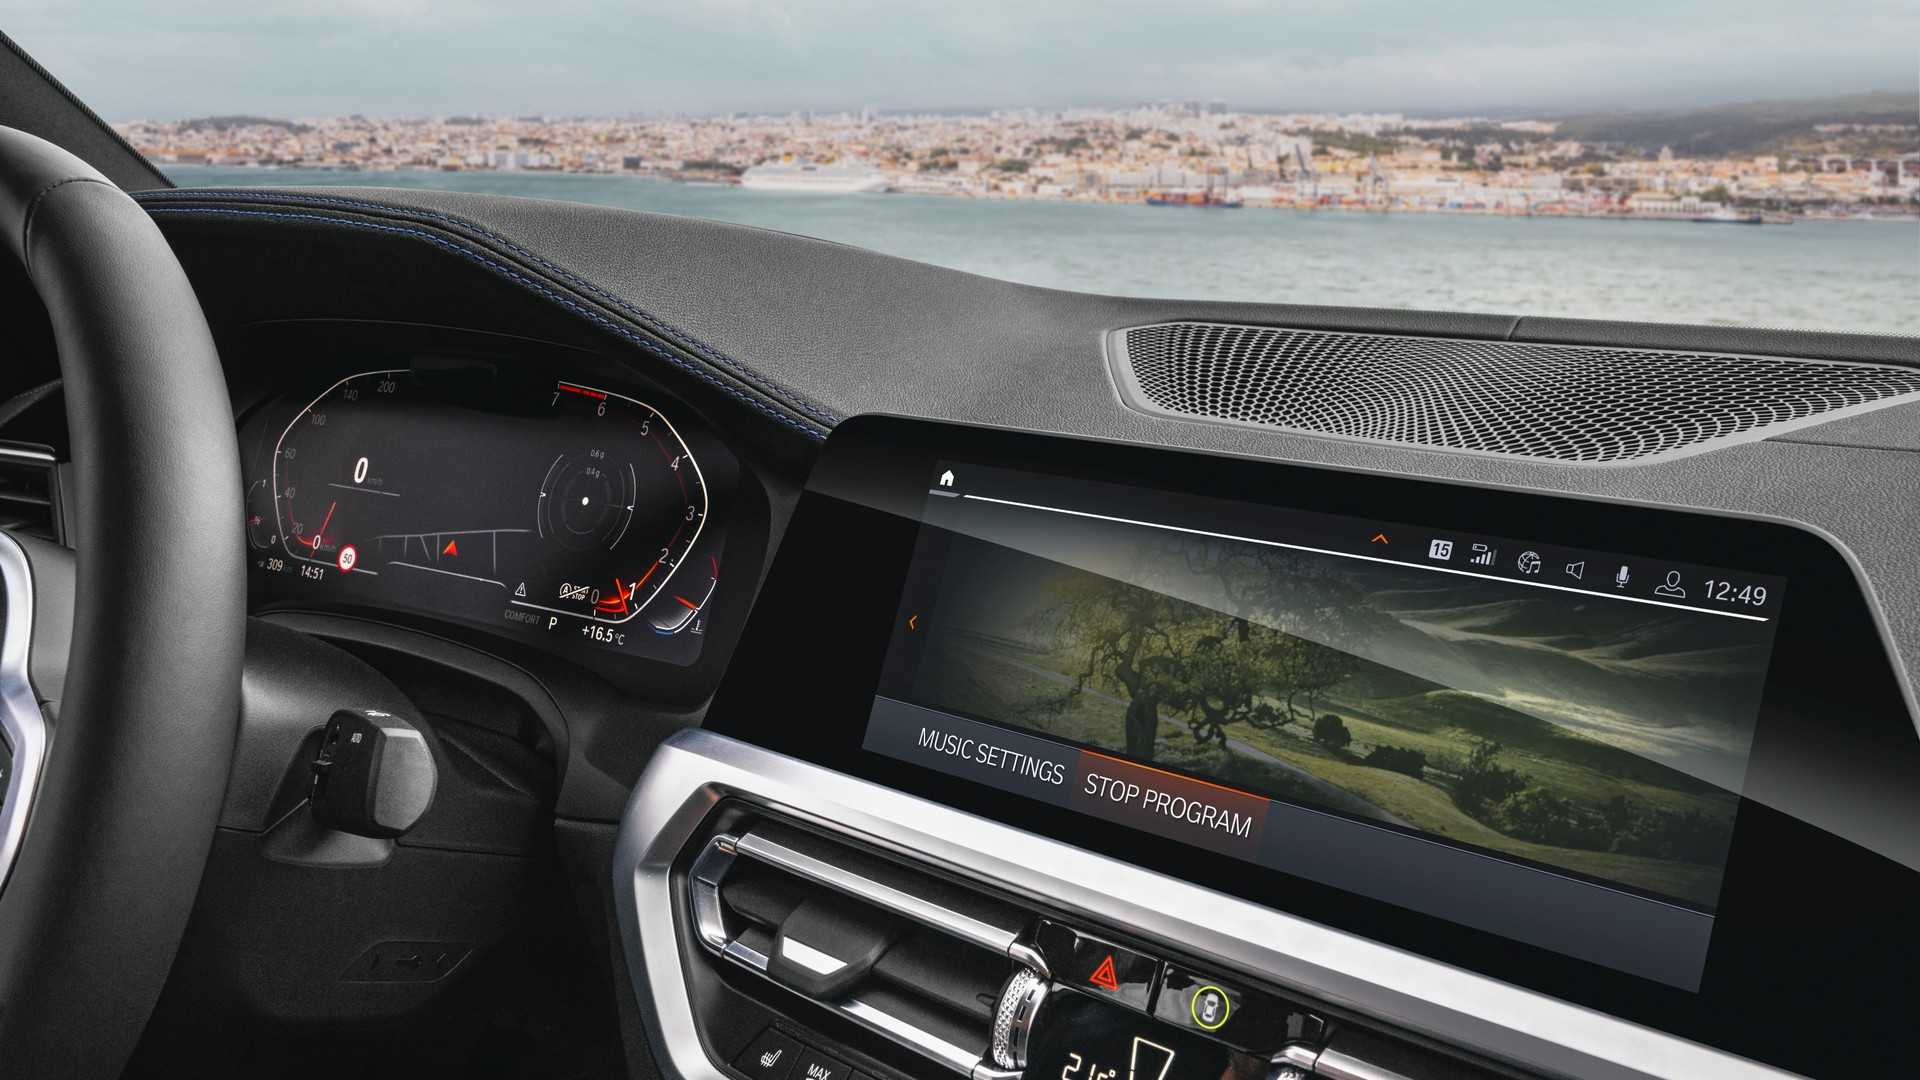 BMW comienza a ofrecer actualizaciones remotas (OTA) en algunos de sus modelos